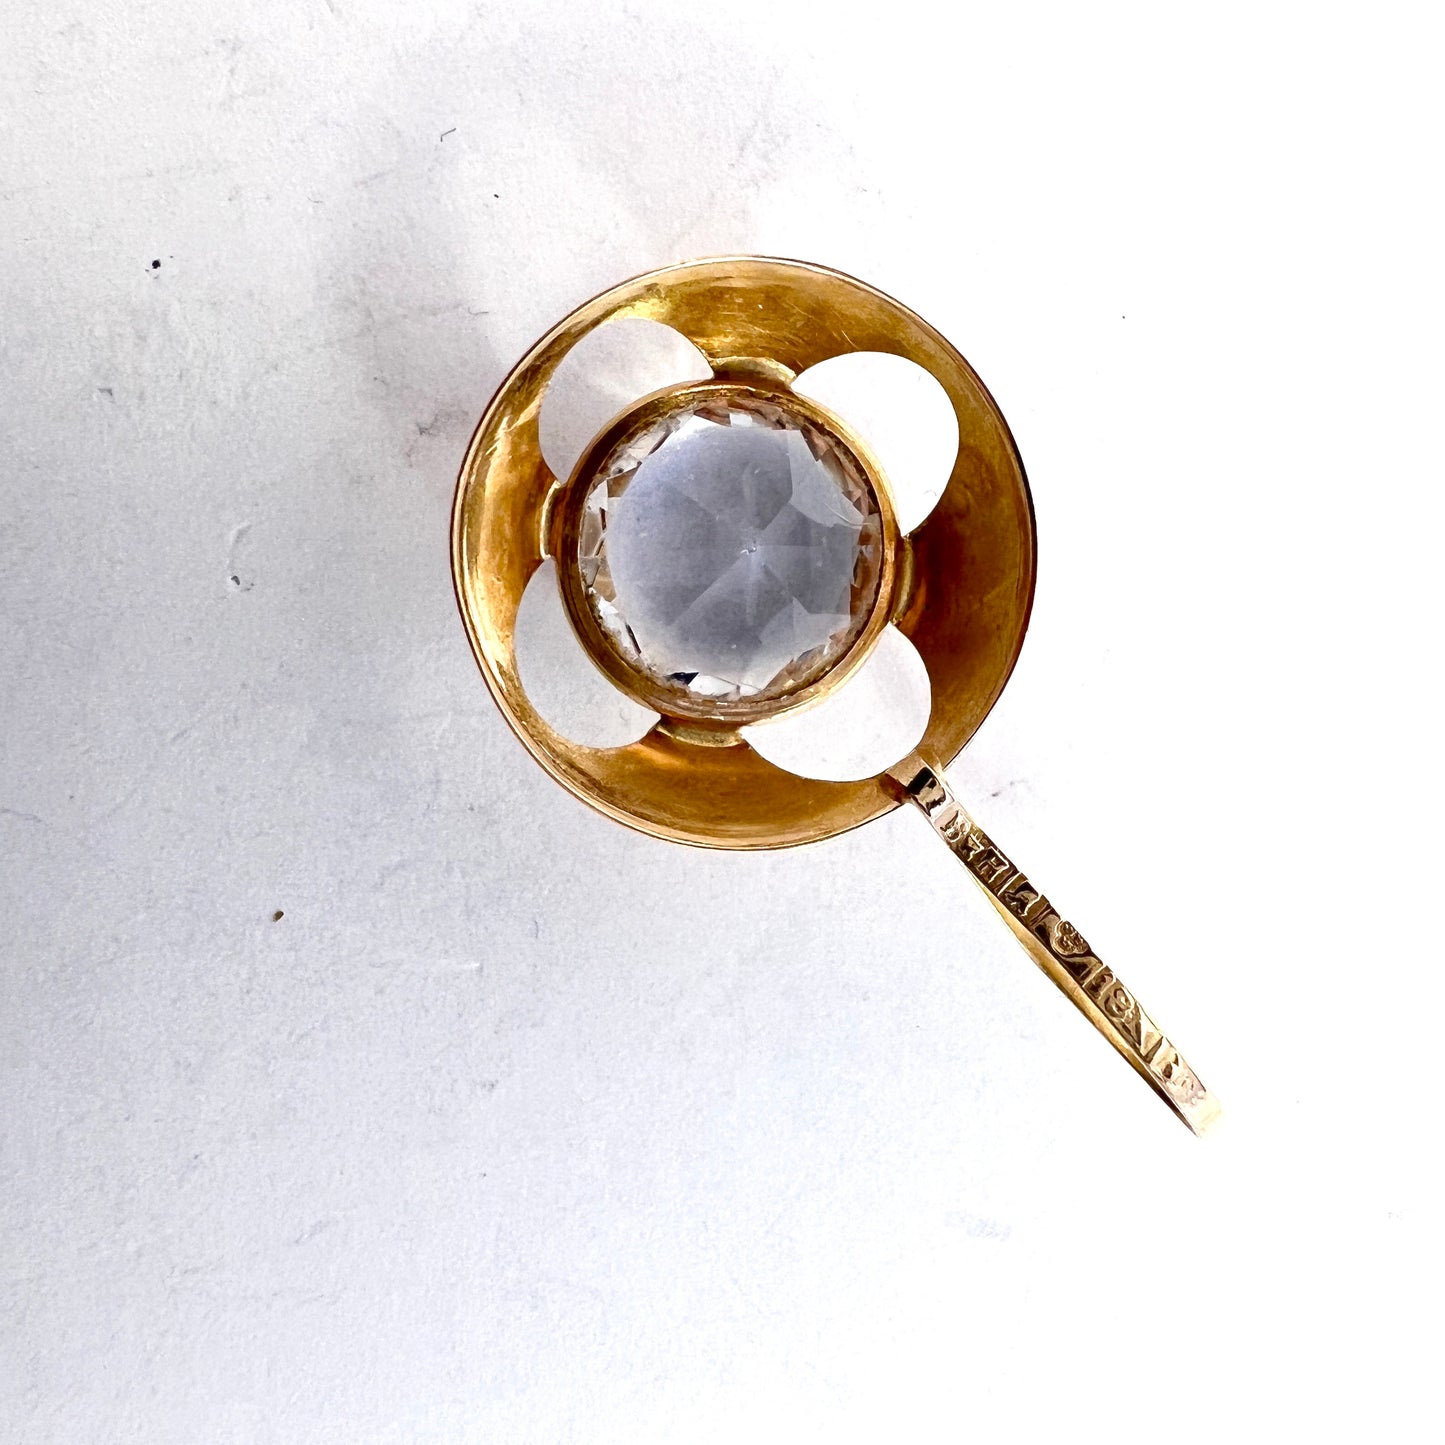 Bengt Hallberg, Sweden 1969. Vintage 18k Gold Rock Crystal Pendant.